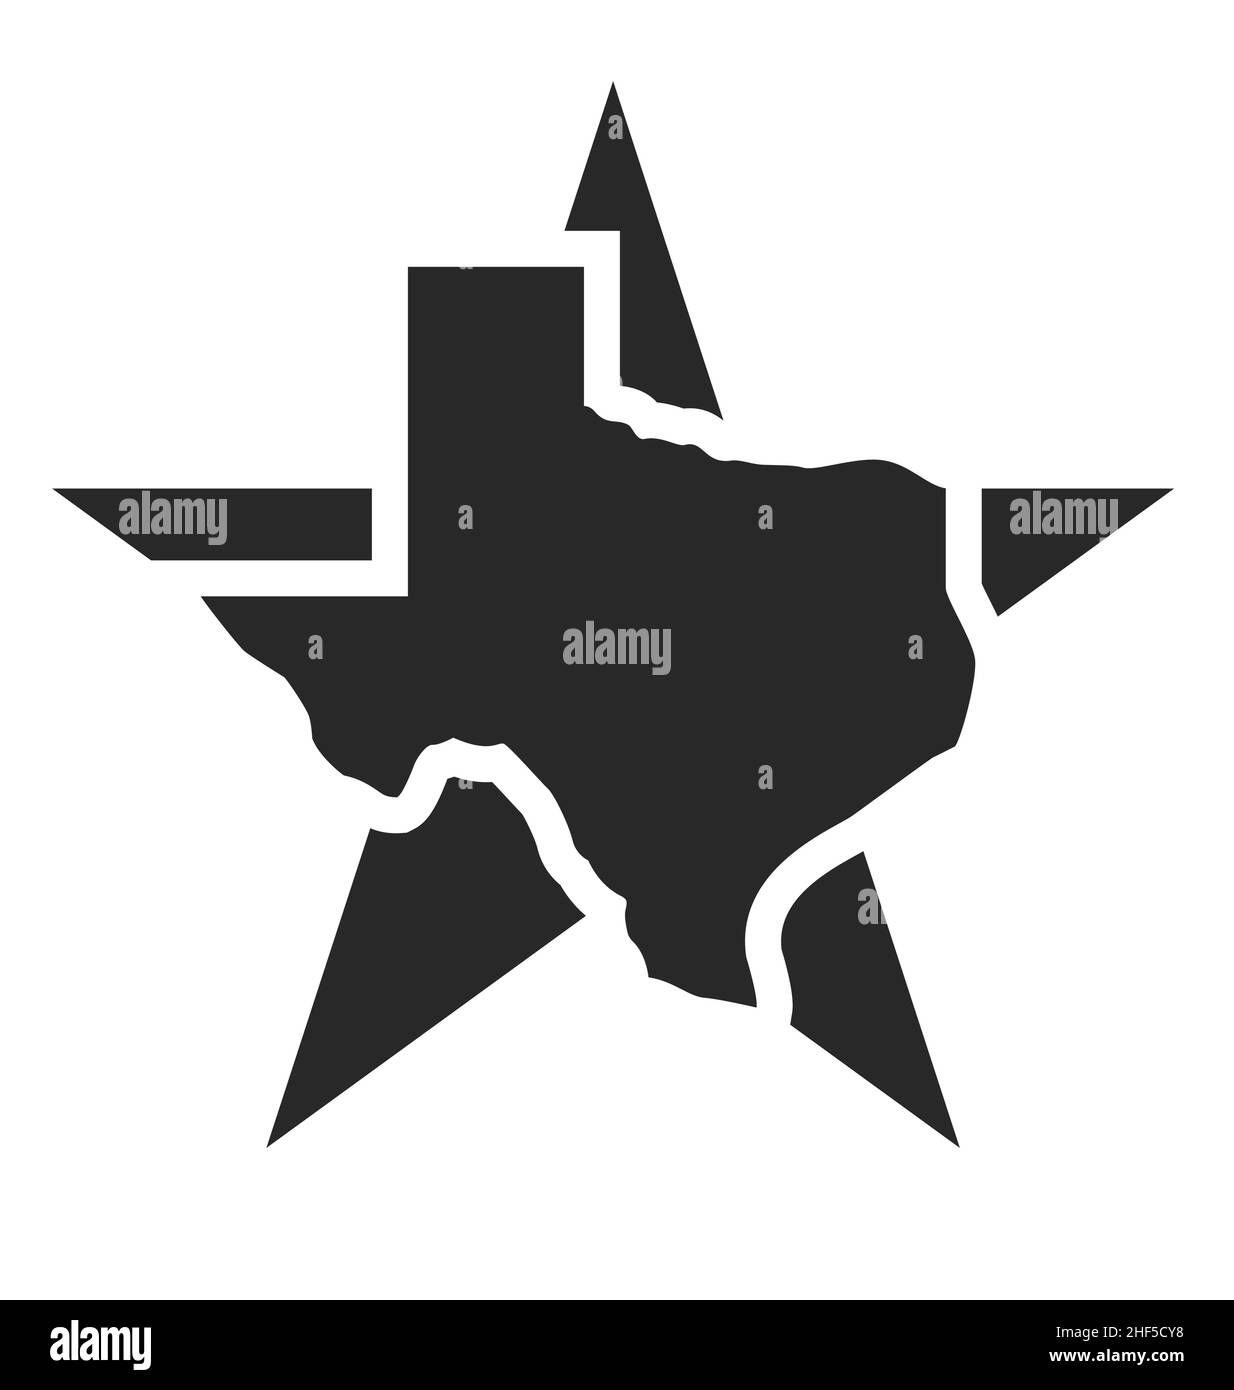 Einsamer Stern texas Staat Kartenform vereinfachte Silhouette Symbol Symbol Logo Vektor isoliert auf weißem Hintergrund Stock Vektor